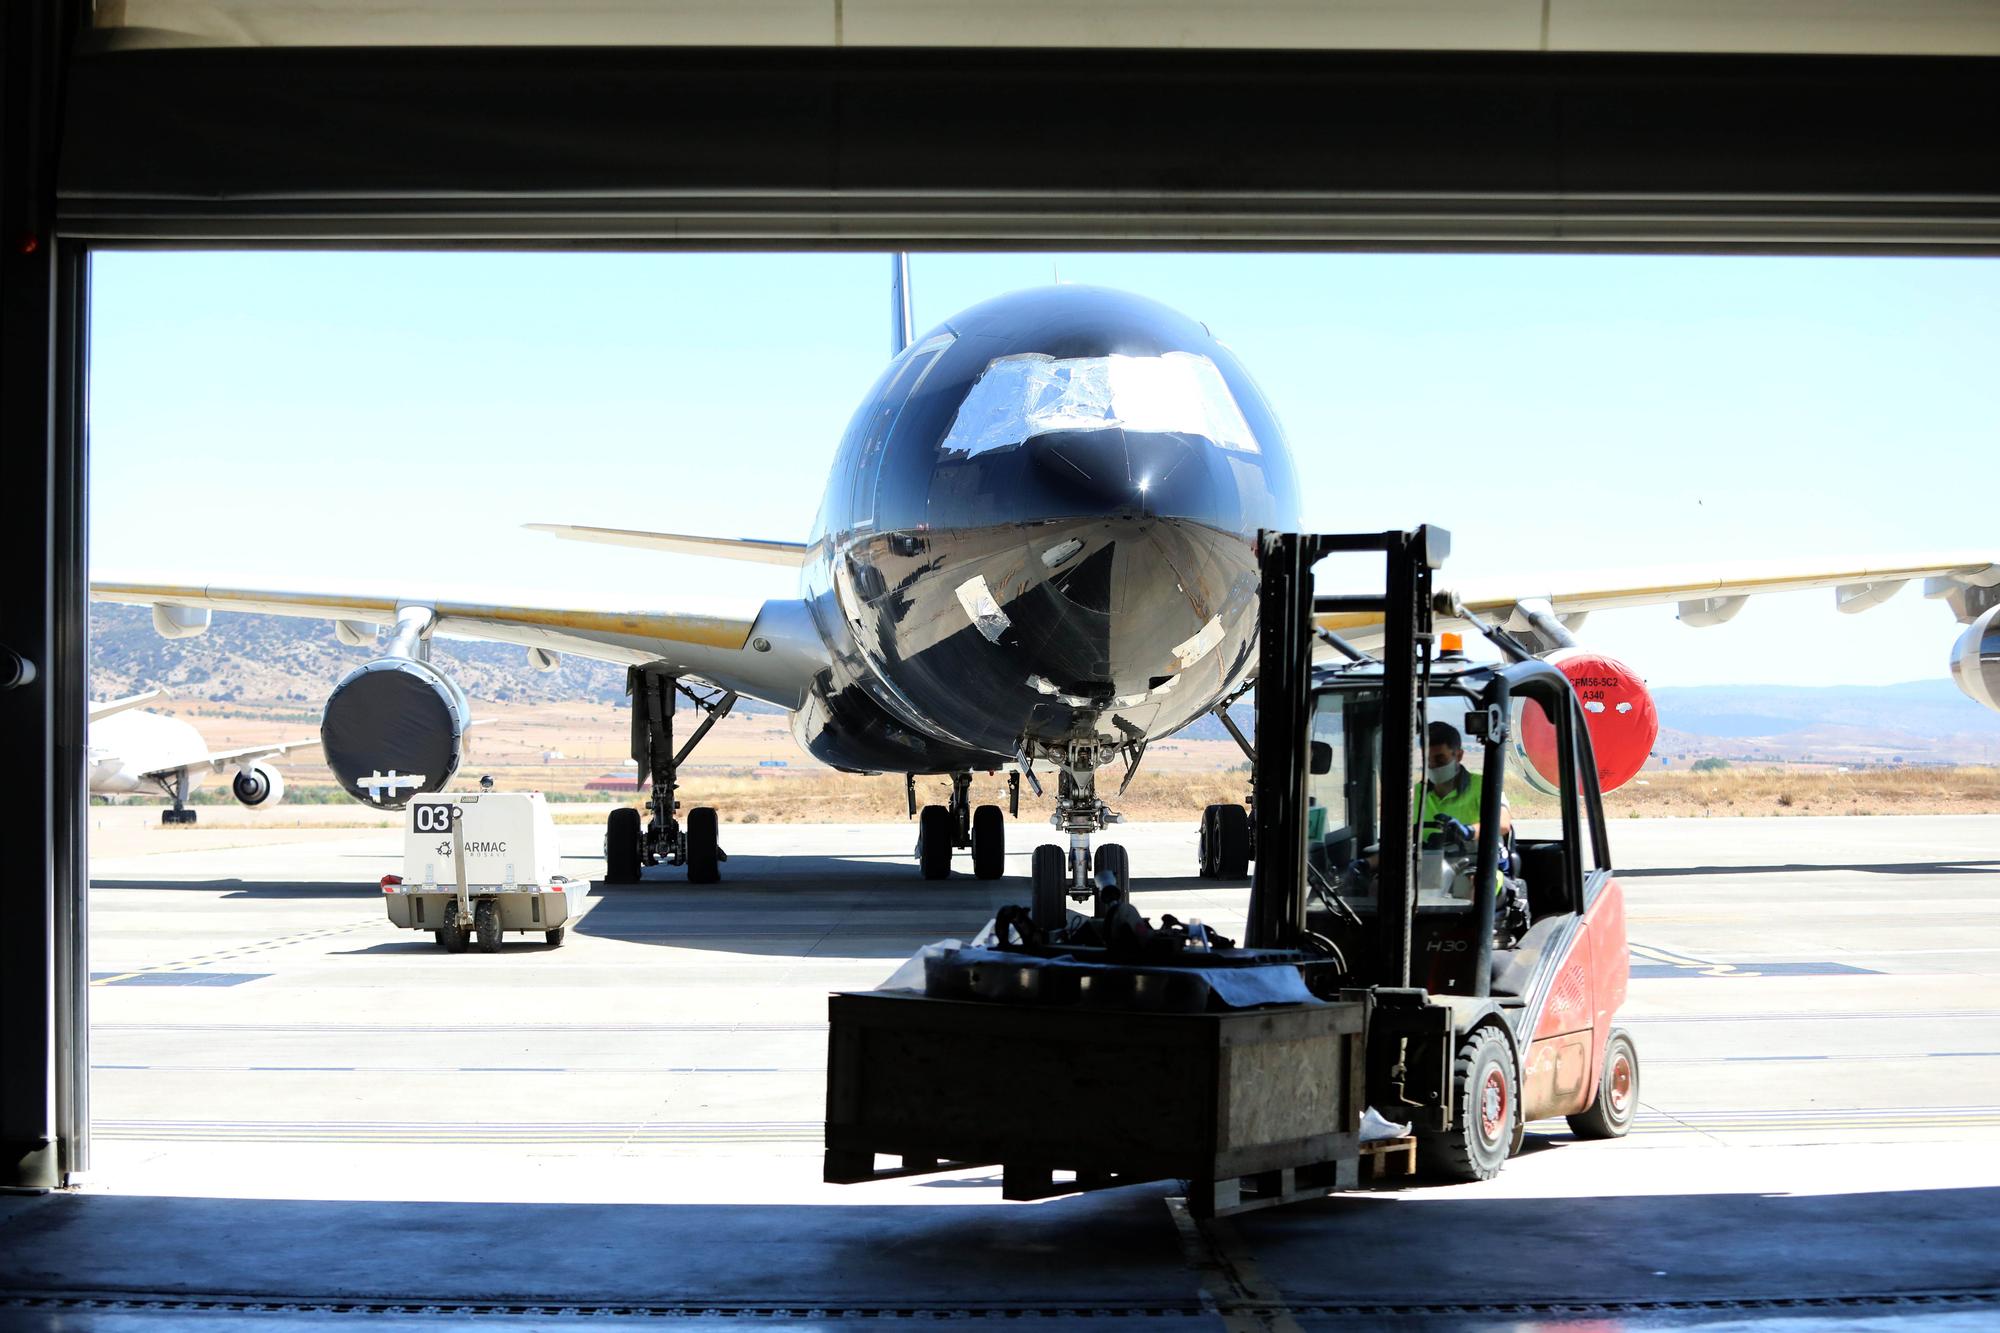 El aeropuerto de Teruel no tiene actividad comercial y se dedica al almacenaje y mantenimiento de aviones.